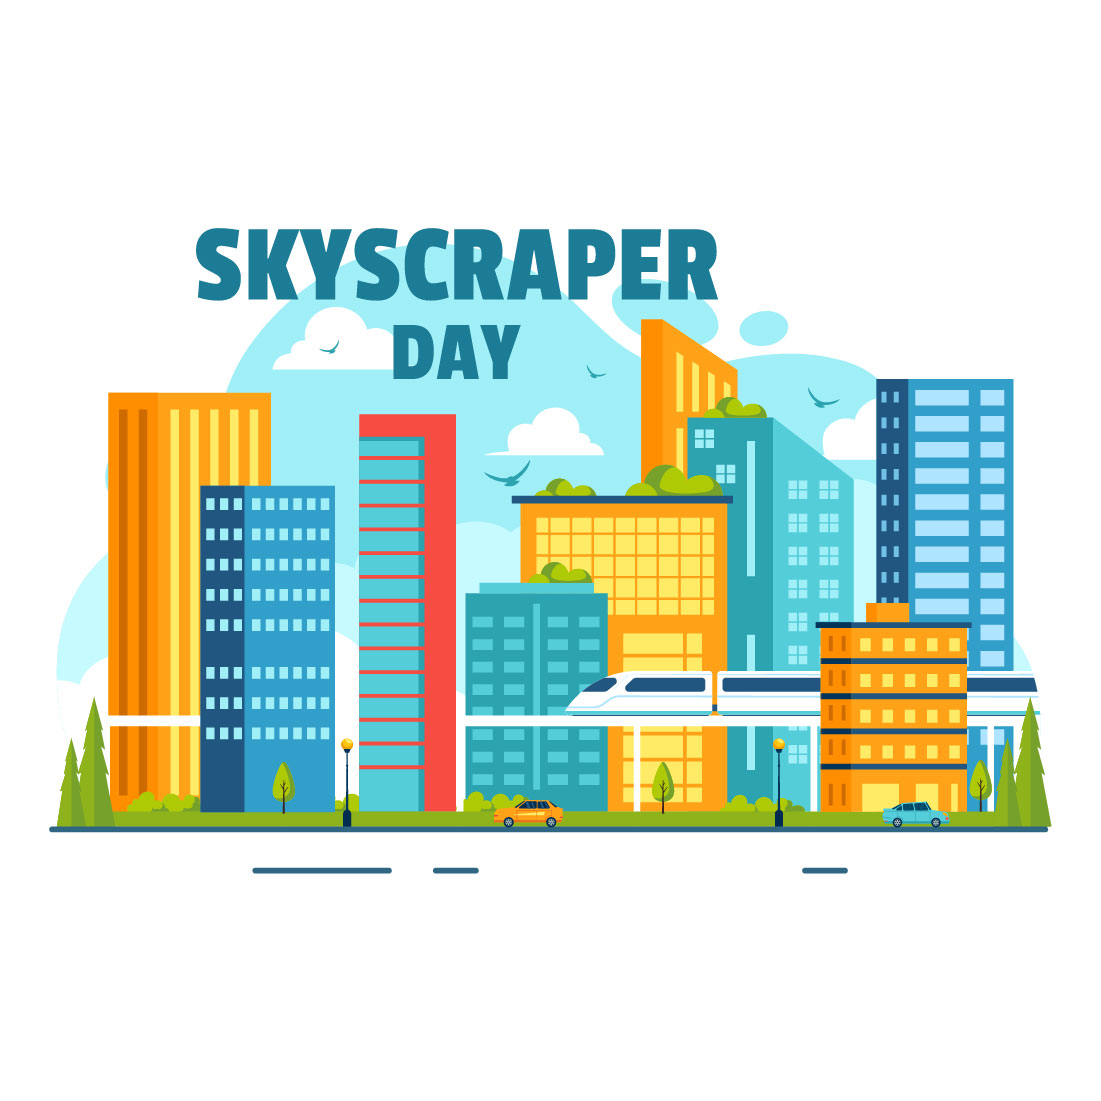 10 Skyscraper Day Illustration cover image.